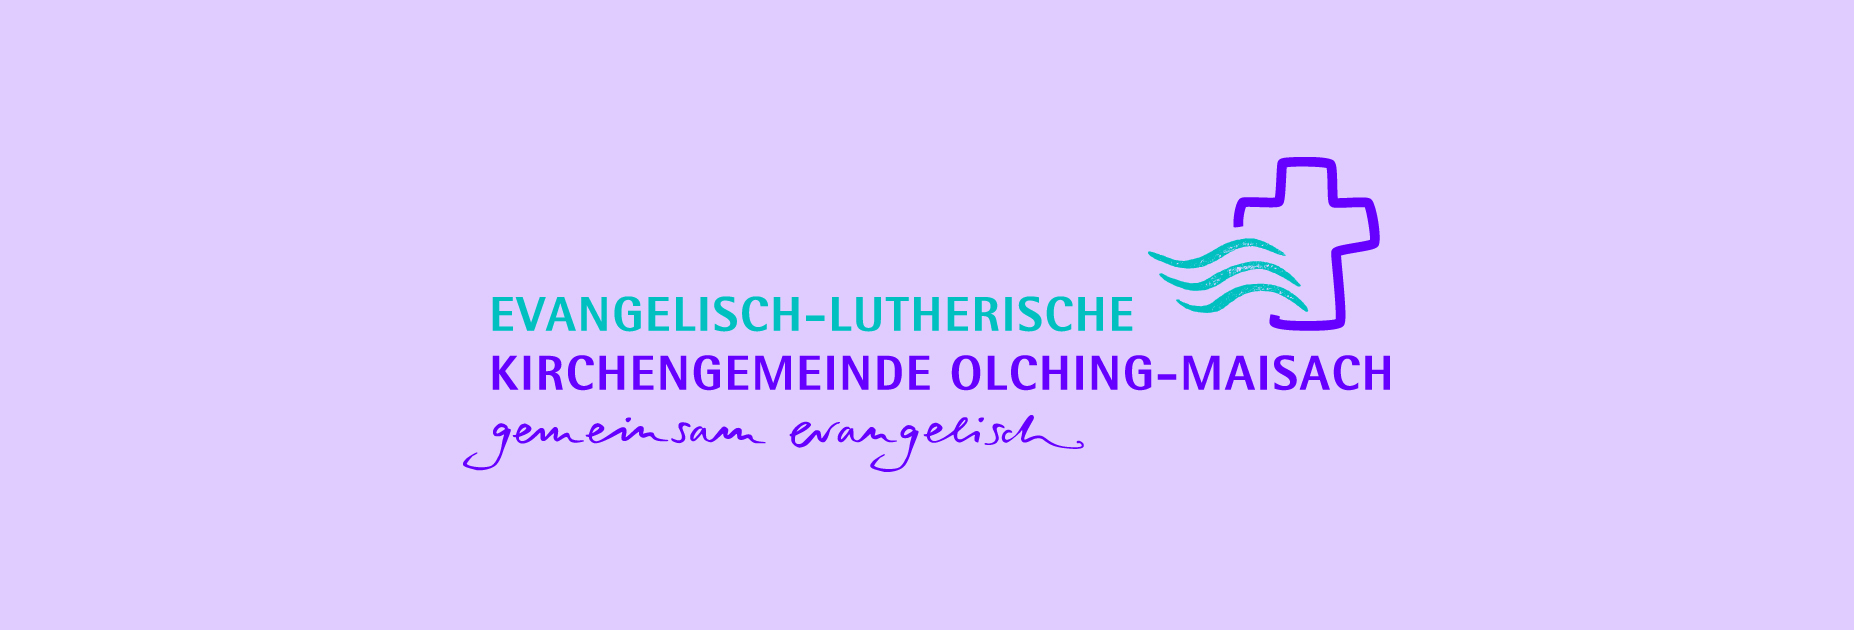 Evangelisch-Lutherische Kirchengemeinde Olching-Maisach